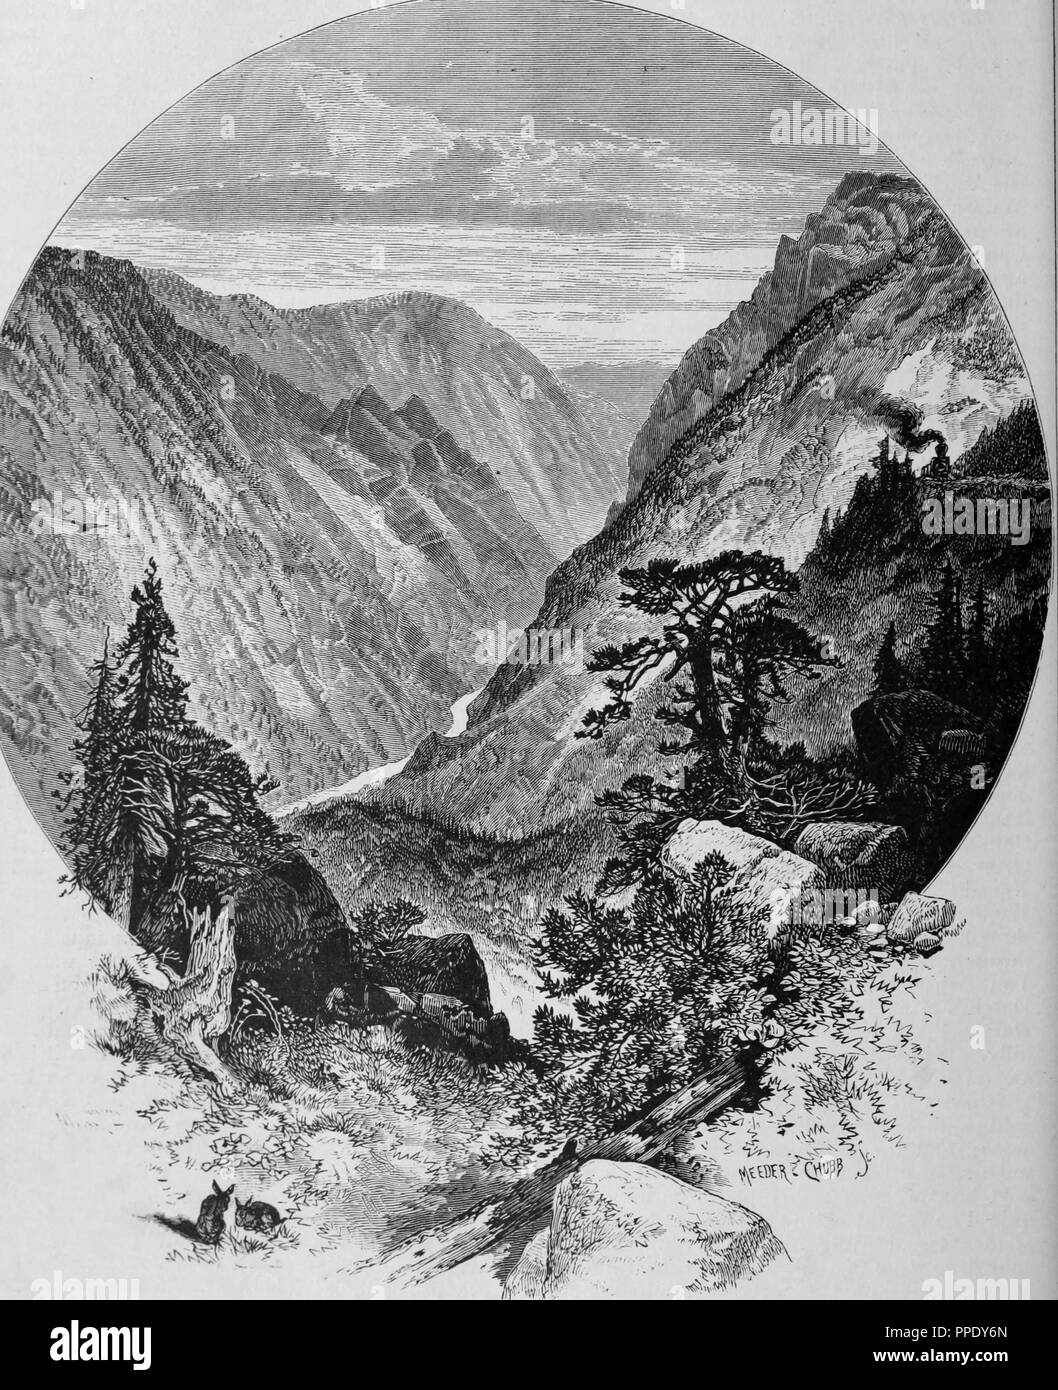 Gravure de l'écart du géant dans l'American River Canyon, du livre 'Le Pacific tourist', 1877. Avec la permission de Internet Archive. () Banque D'Images